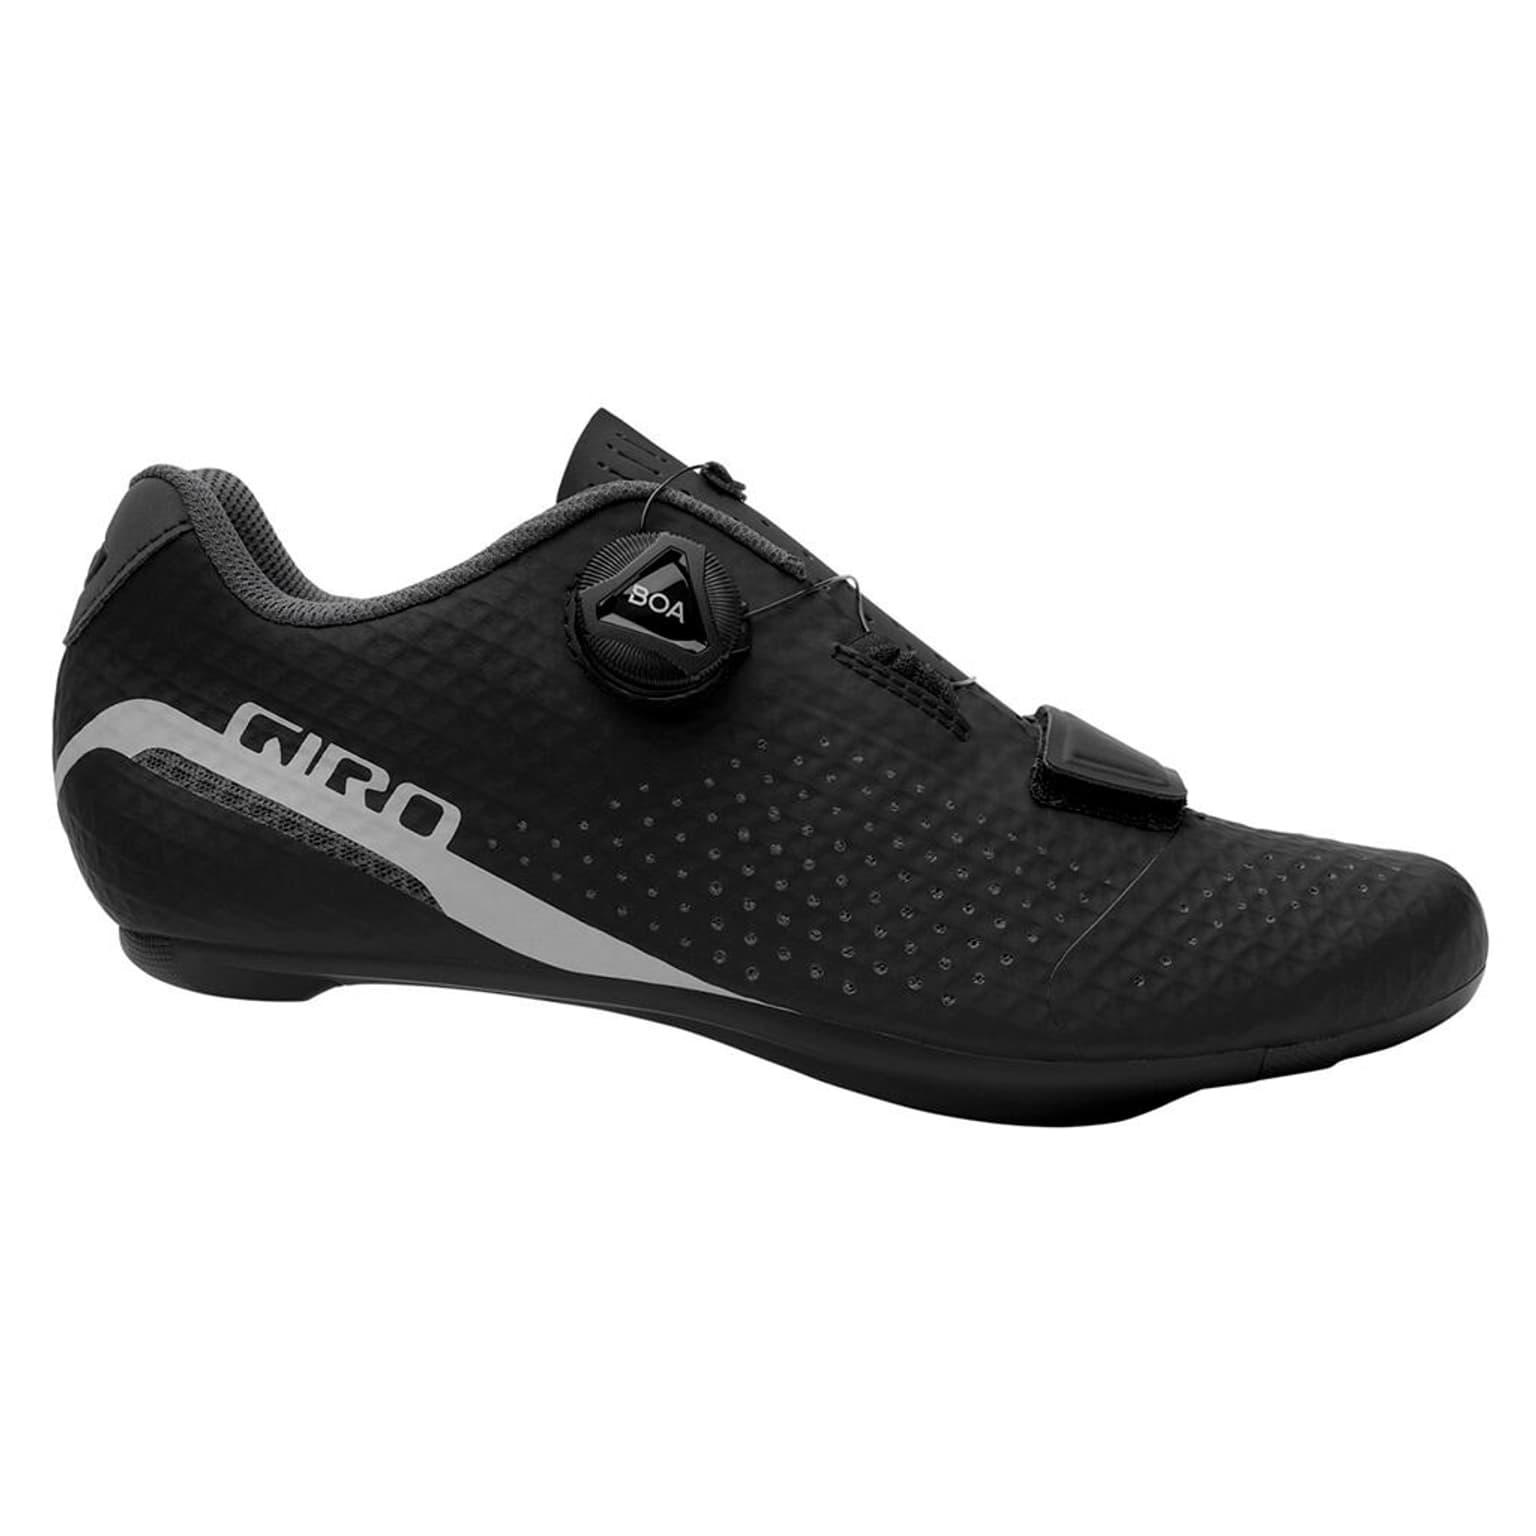 Giro Giro Cadet W Shoe Scarpe da ciclismo nero 1